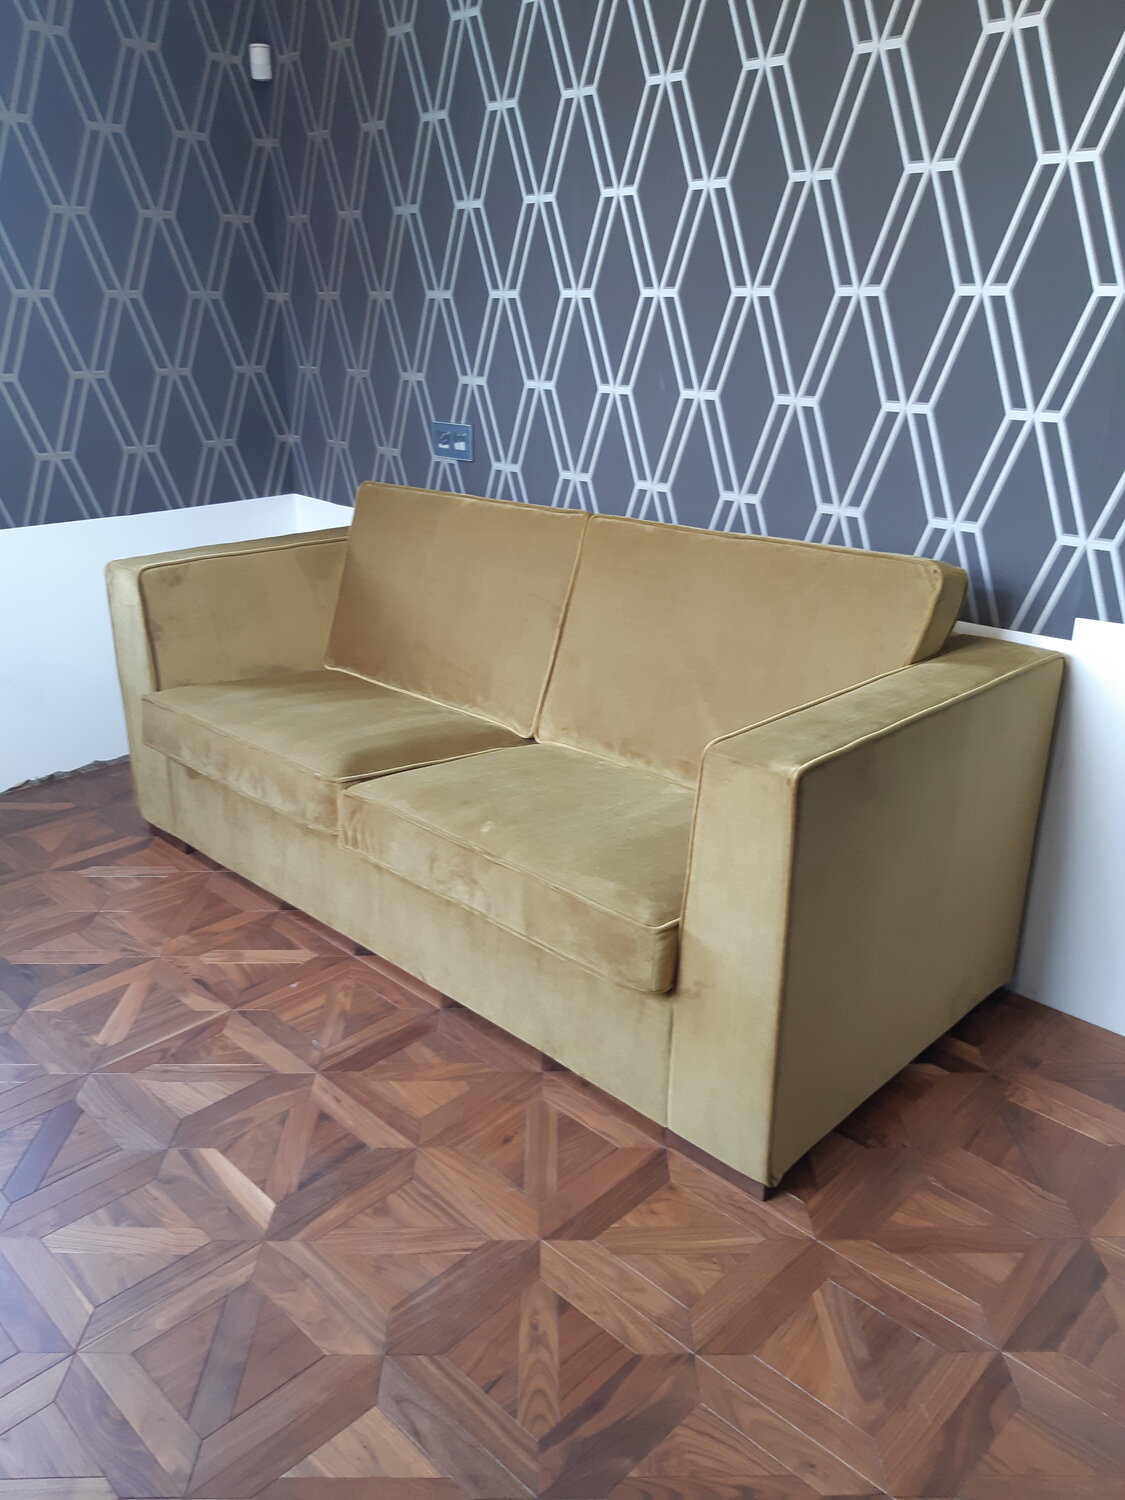 Мебель для дома в Москве: 44 мастера по изготовлению мебели со среднимрейтингом 4.6 с отзывами и ценами на Яндекс Услугах.